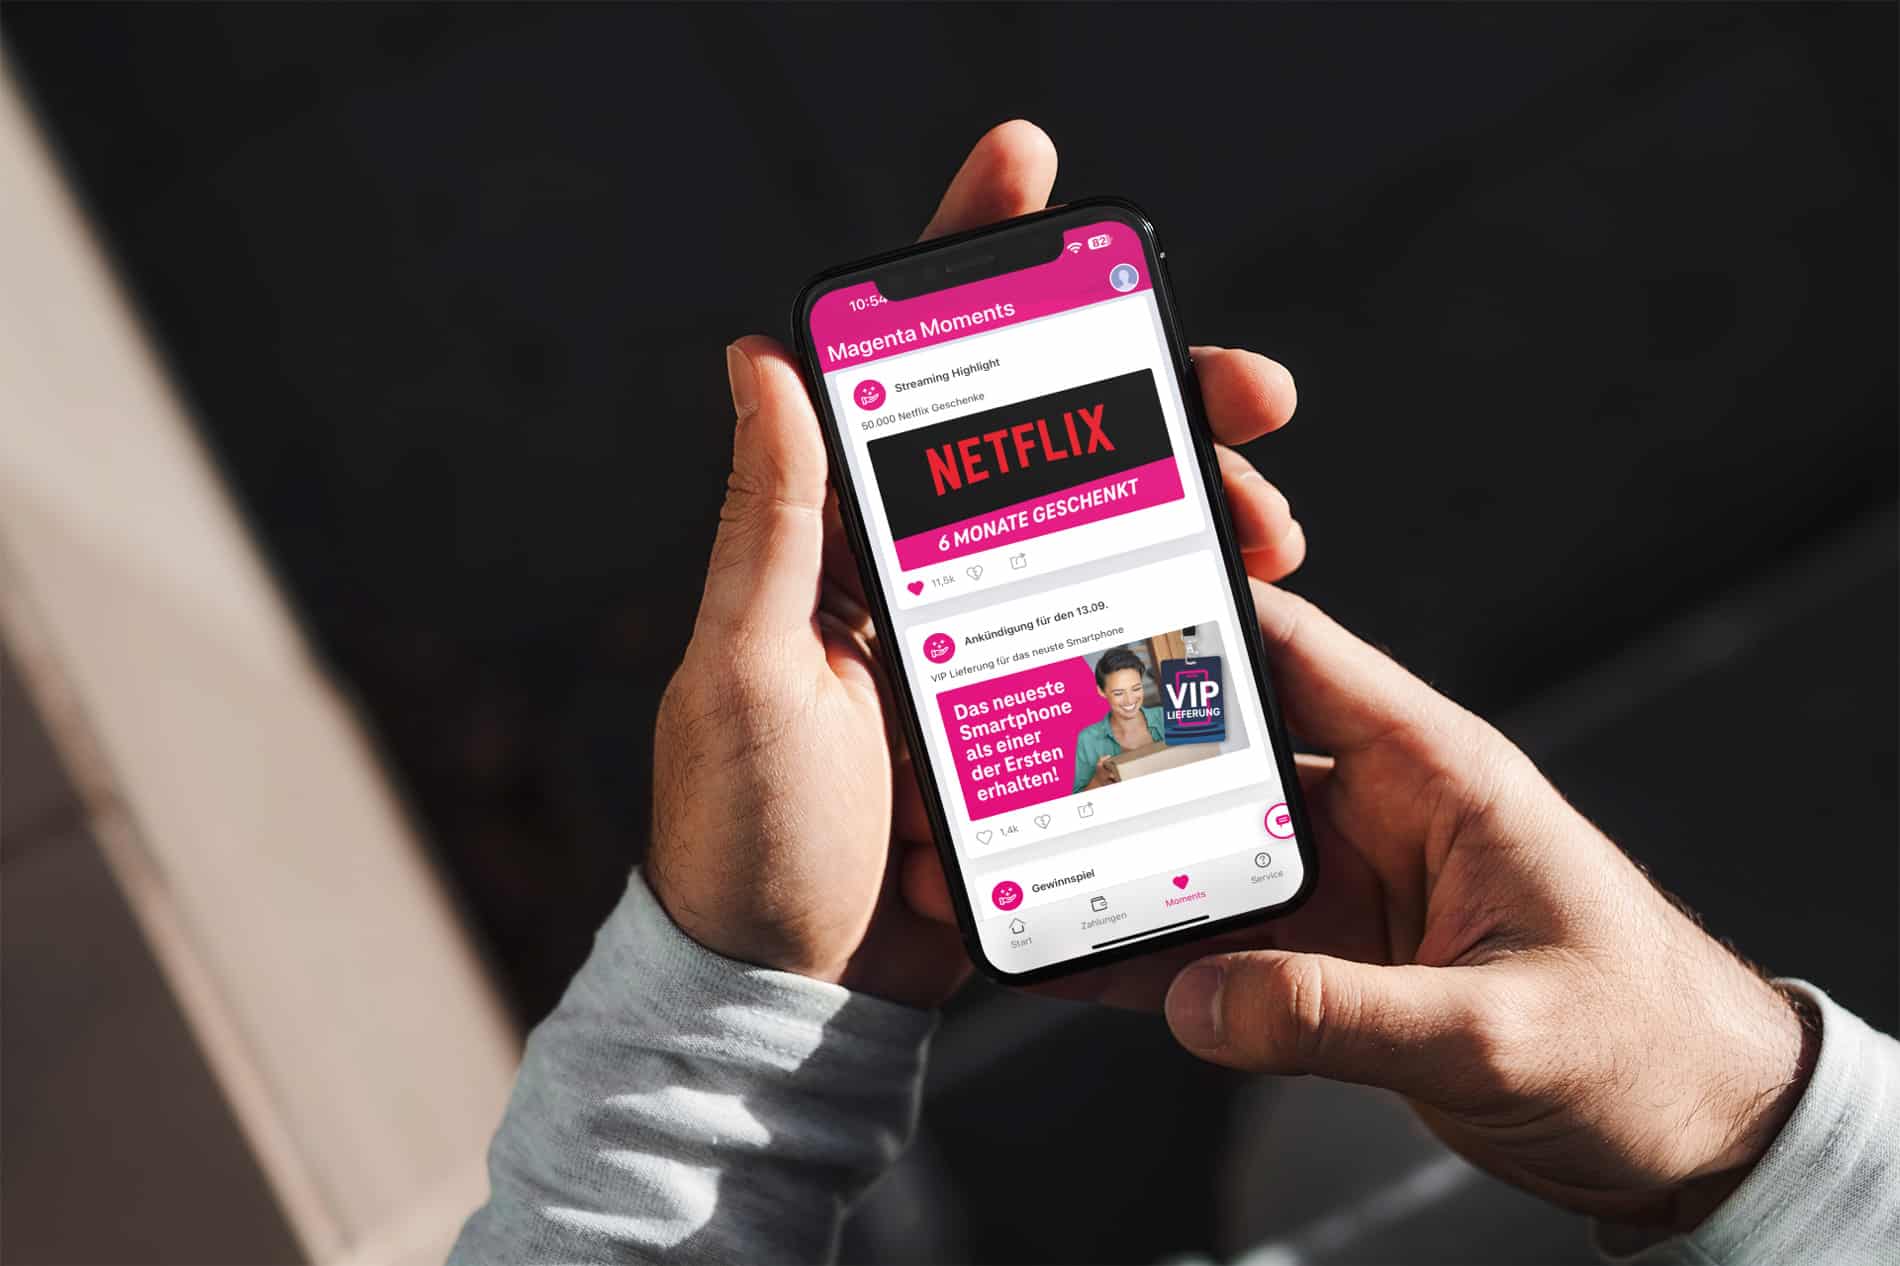 Netflix über die Telekom 6 Monate gratis